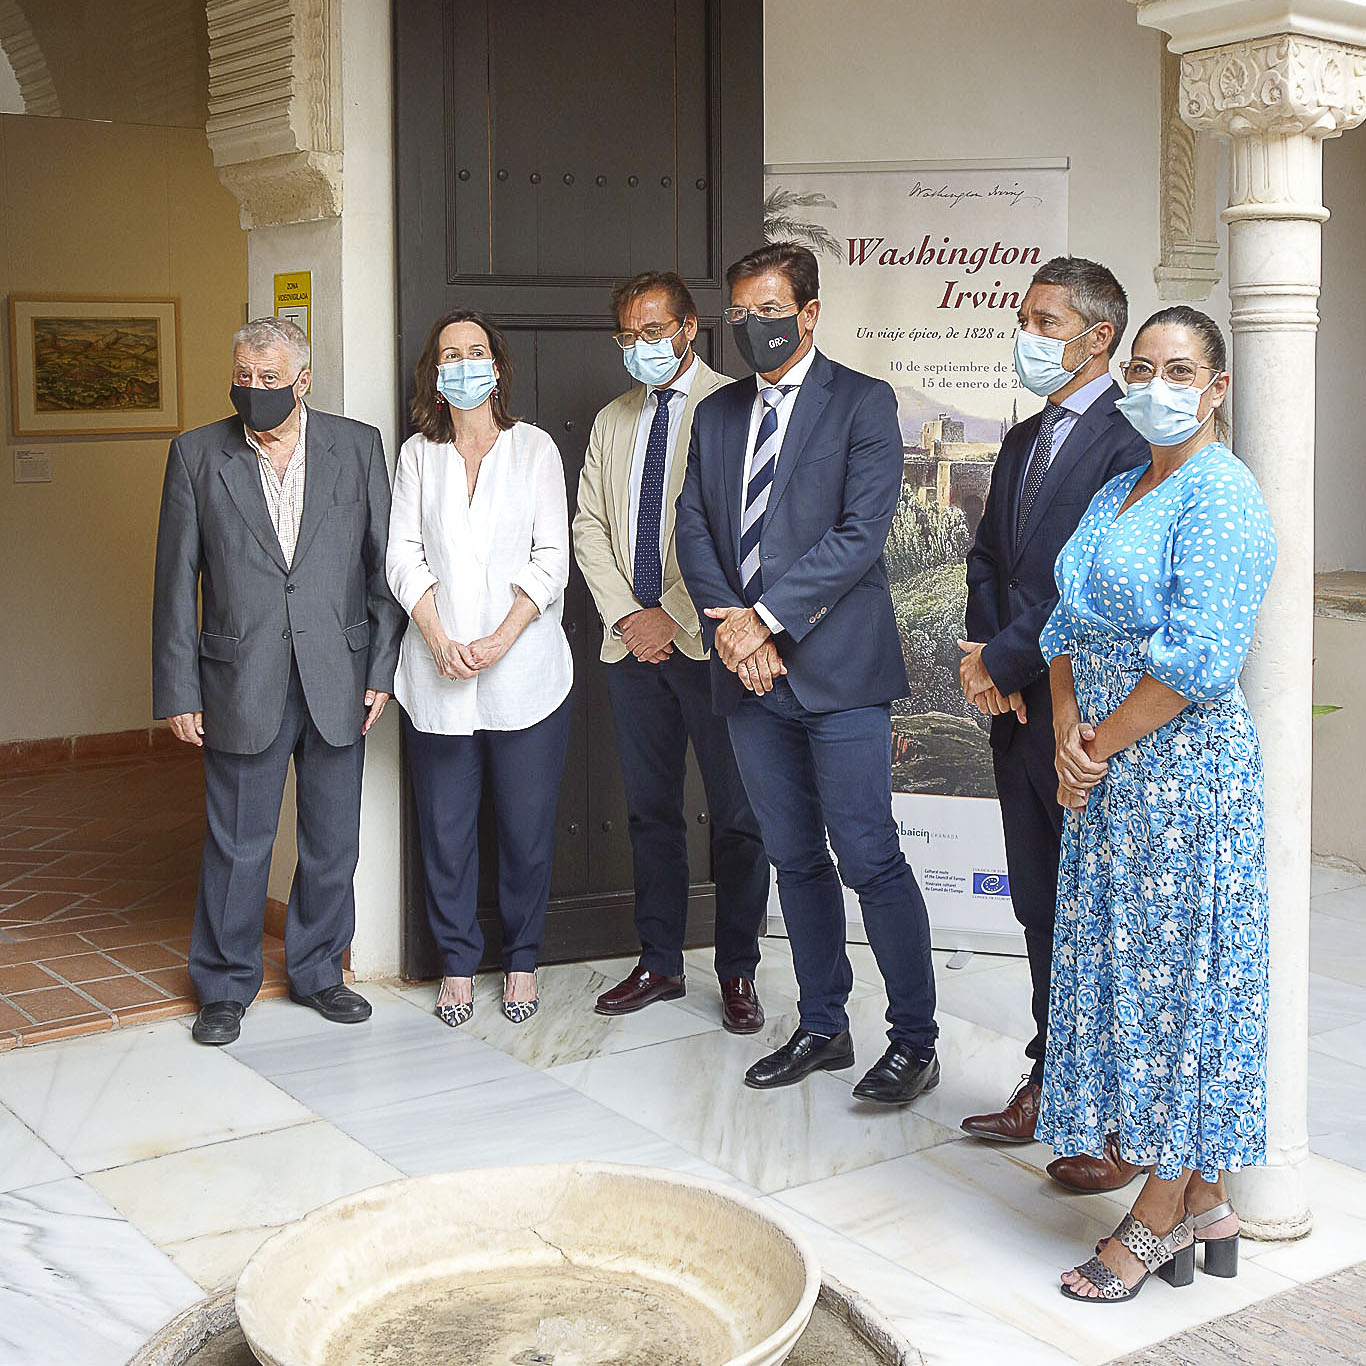 ©Ayto.Granada: La Casa de Zafra acoge una exposicin sobre la vida y la obra de Washington Irving